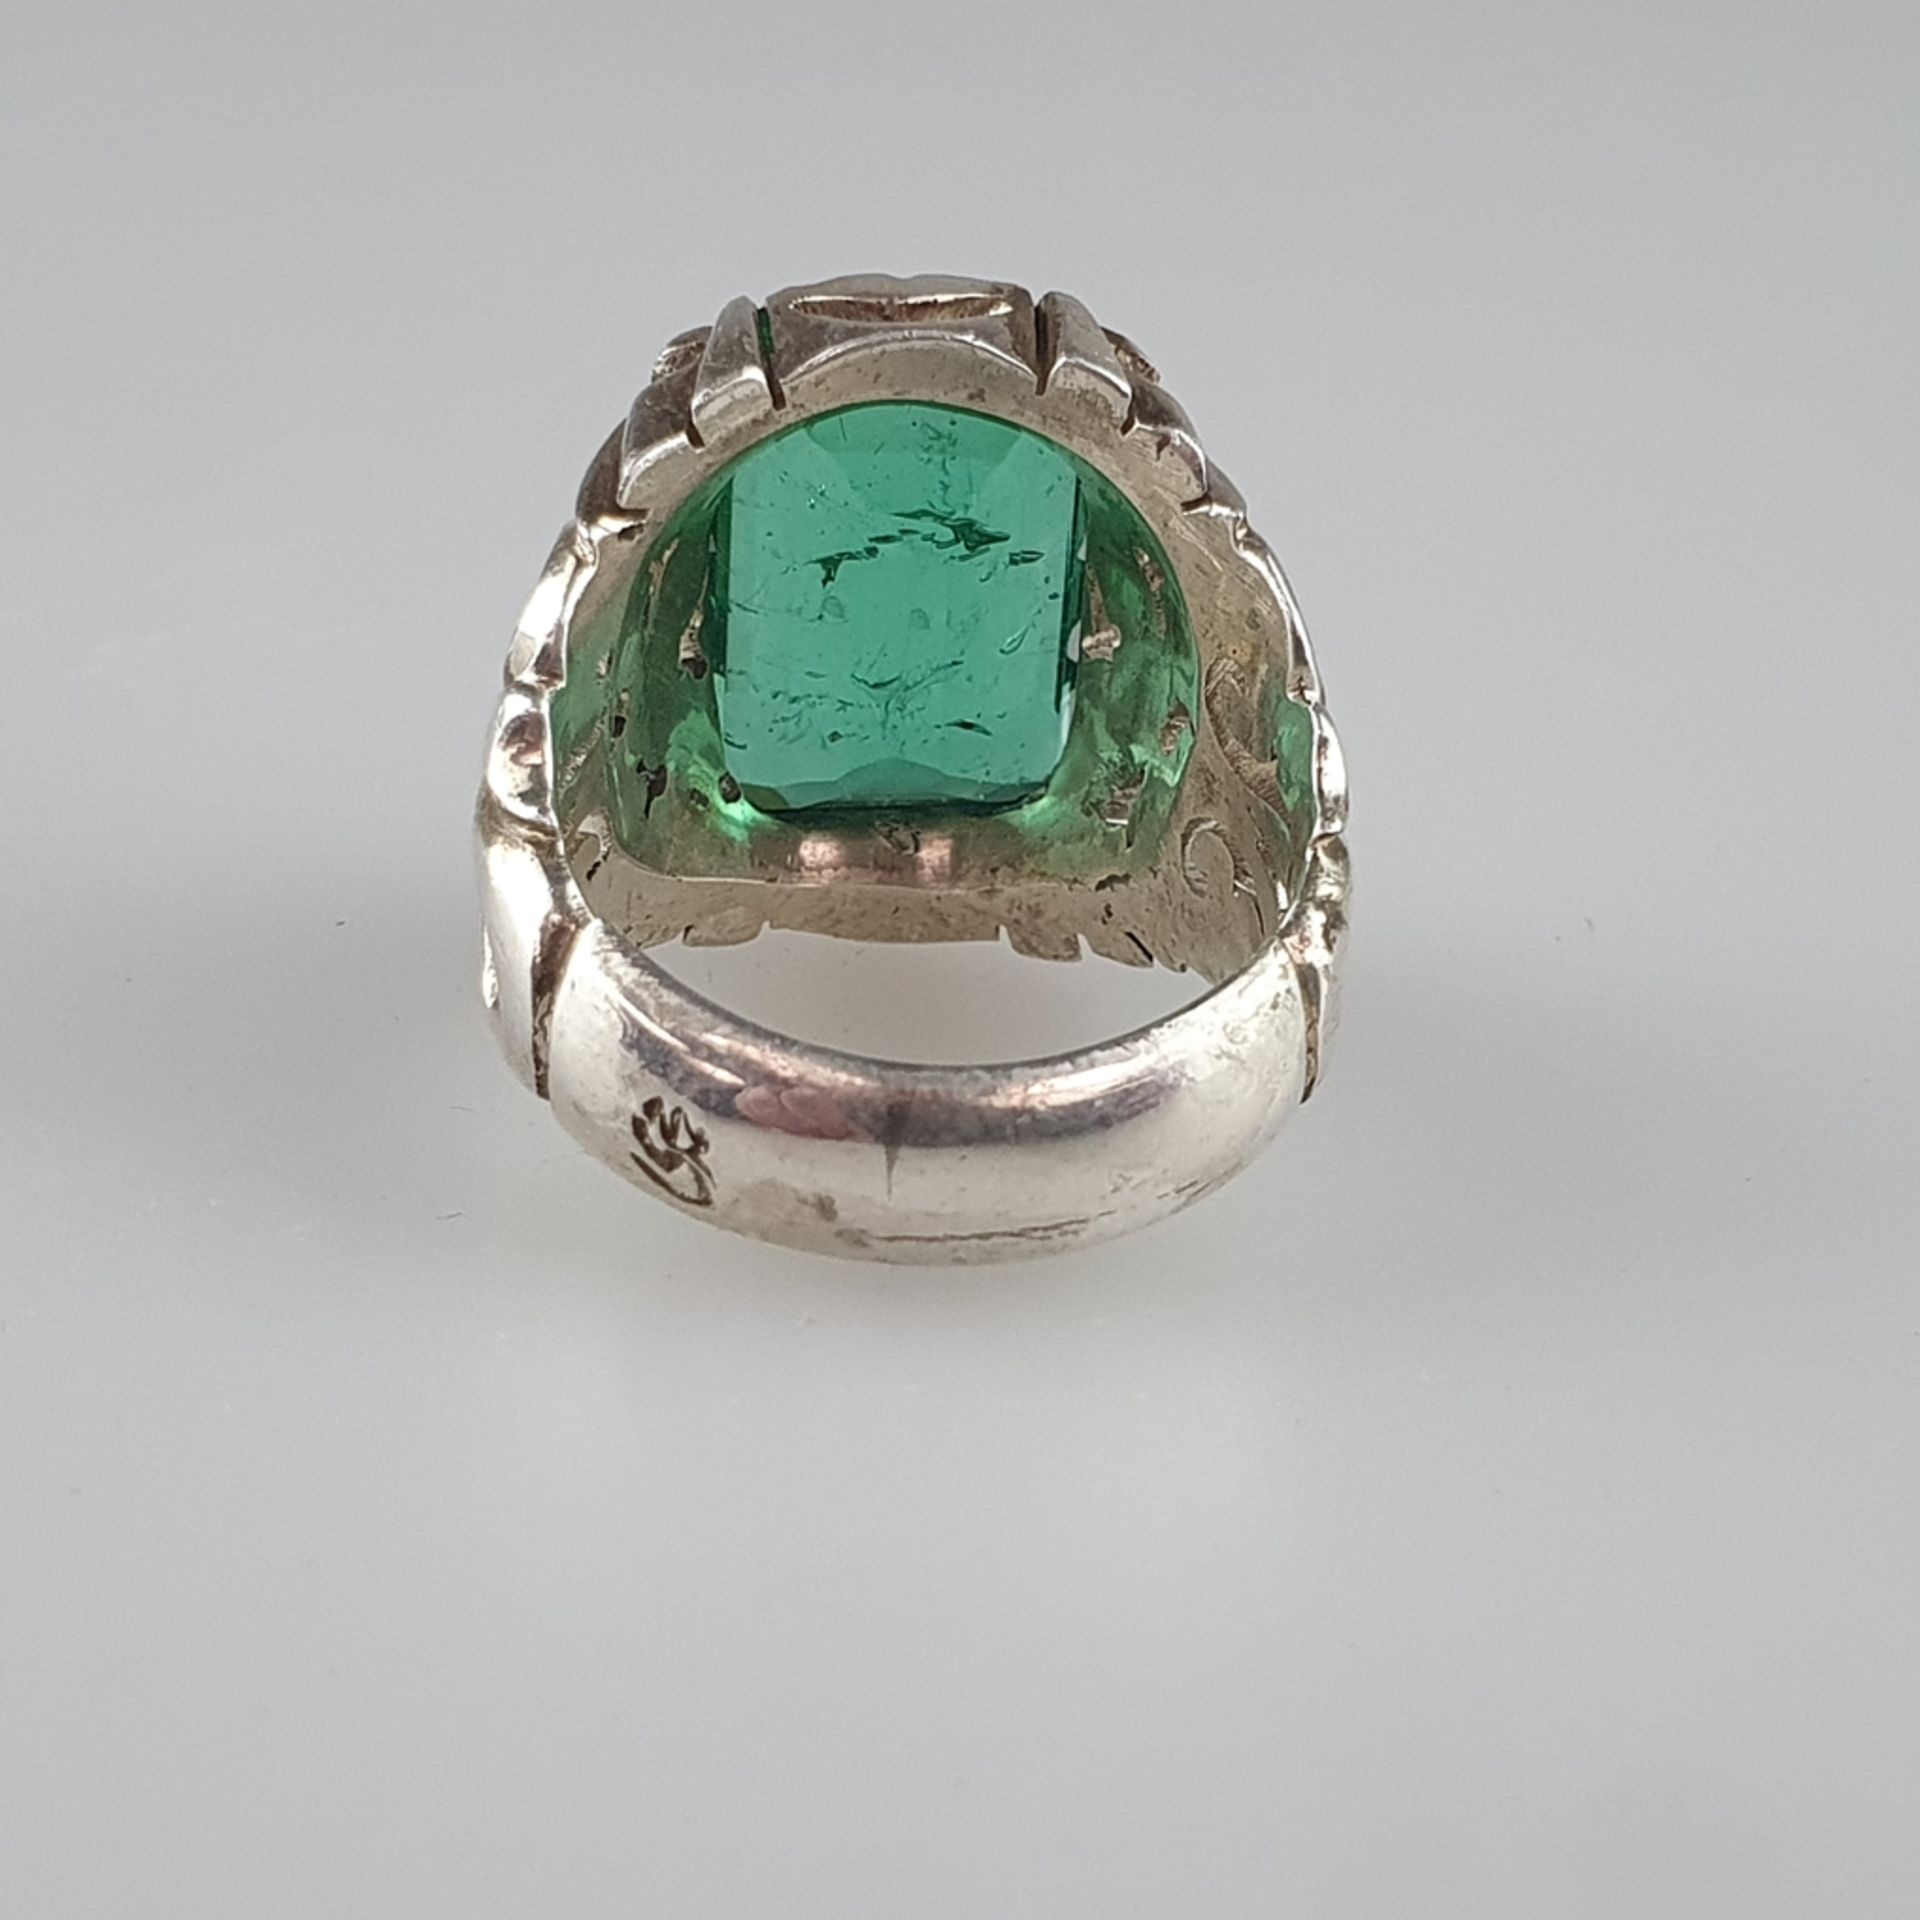 Schwerer Herrenring mit Smaragd - Silber massiv, Fassung ornamental durchbrochen, Ringkopf besetzt - Image 6 of 8